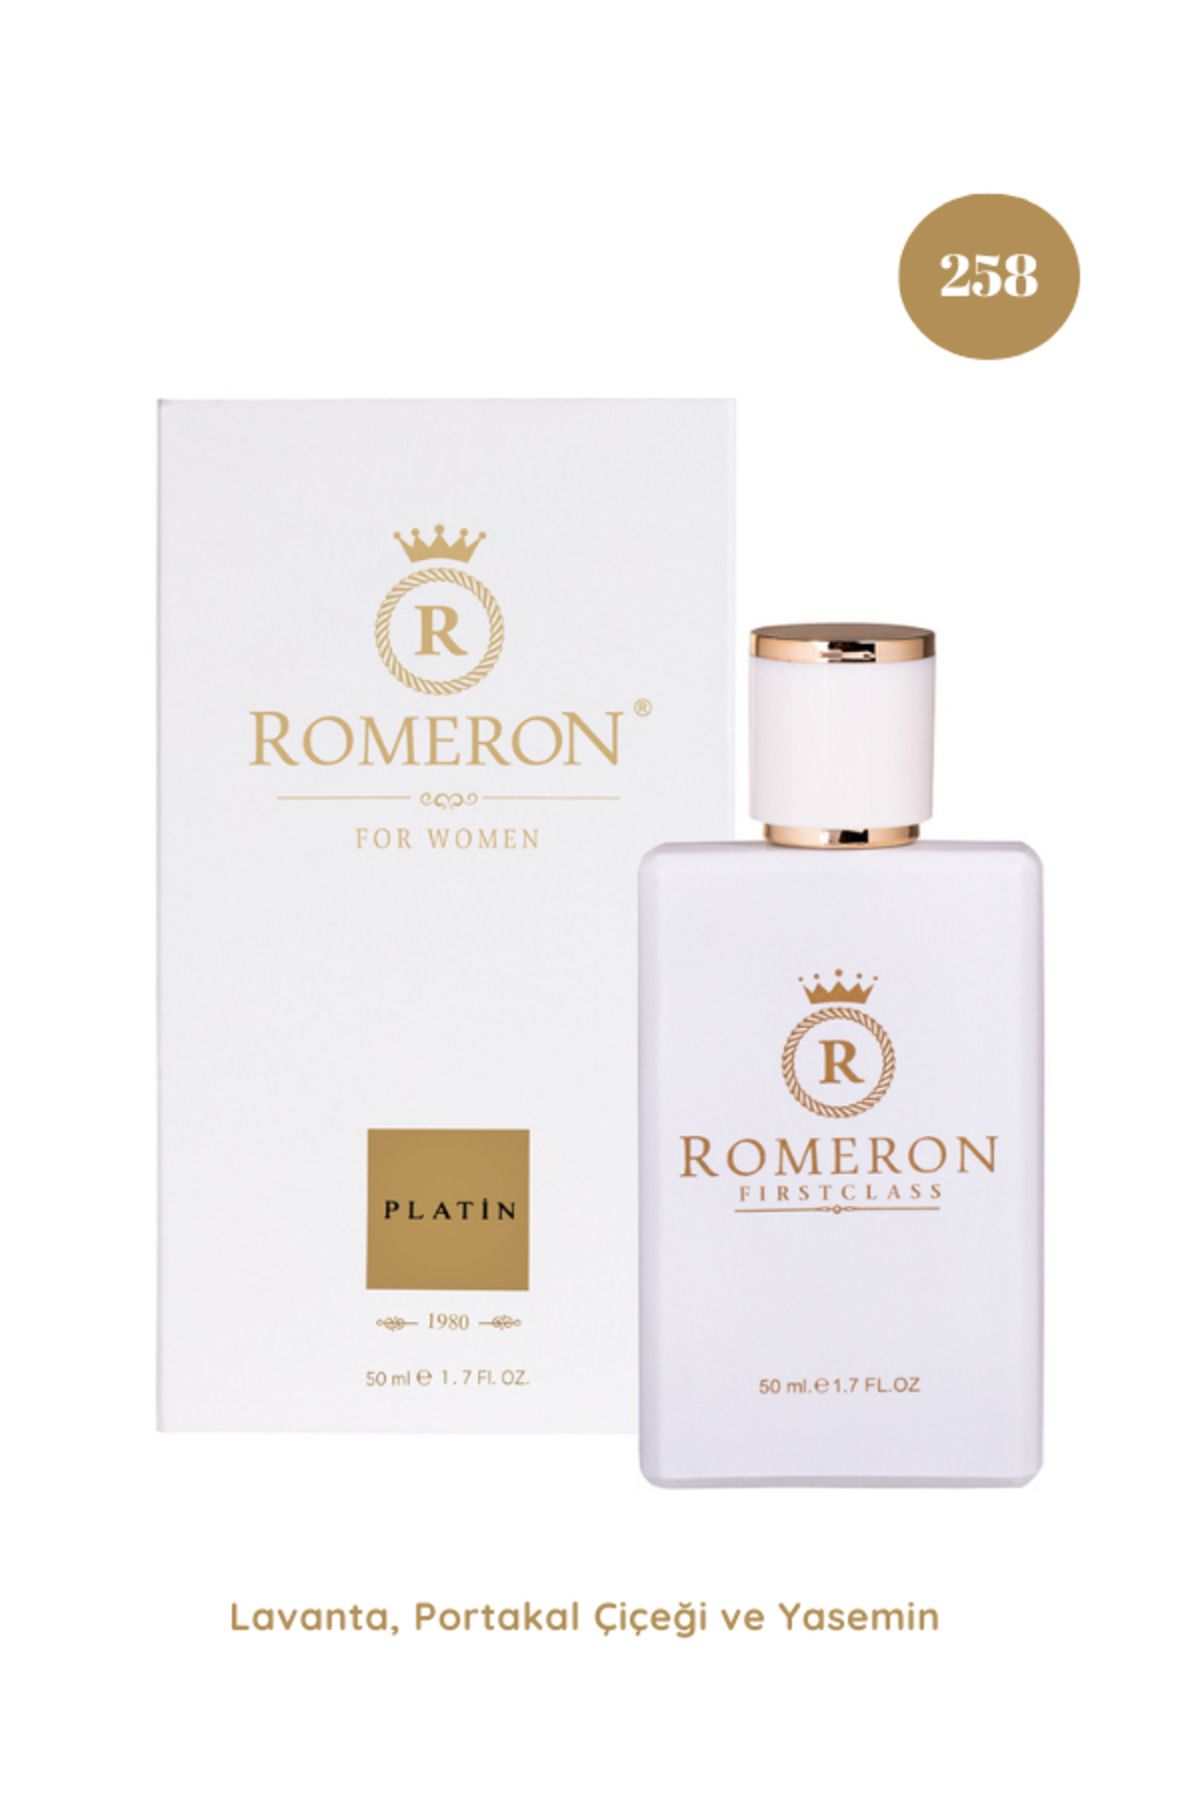 ROMERON 258 Platin Kadın Parfüm Edp 50ml